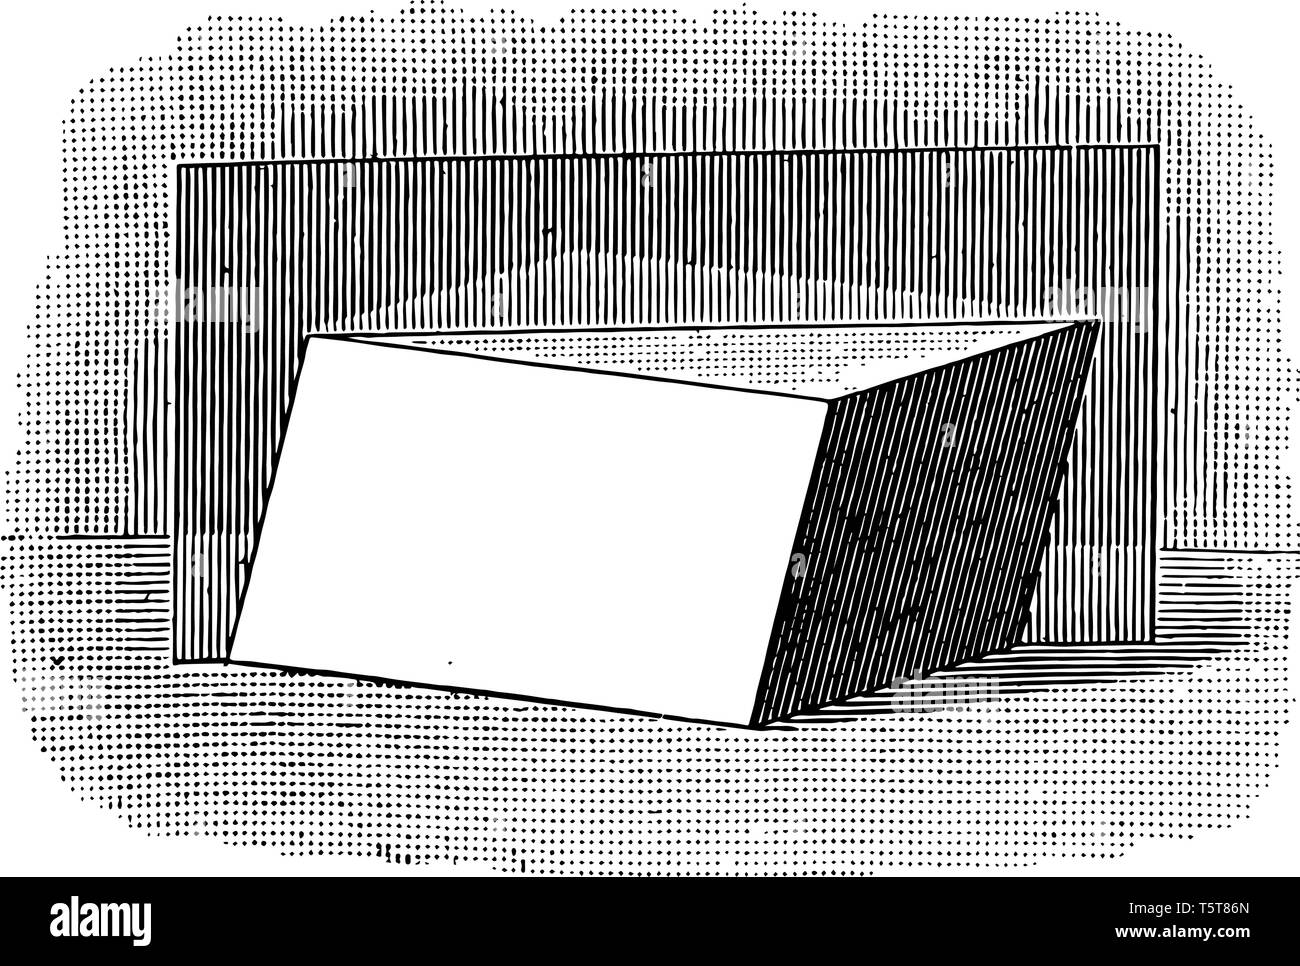 Das Bild zeigt einen Quader vertikal von Mitte getrennt. Die Fläche teilt das parallelepiped in zwei gleichwertige dreieckigen Prismen, vintage Stock Vektor